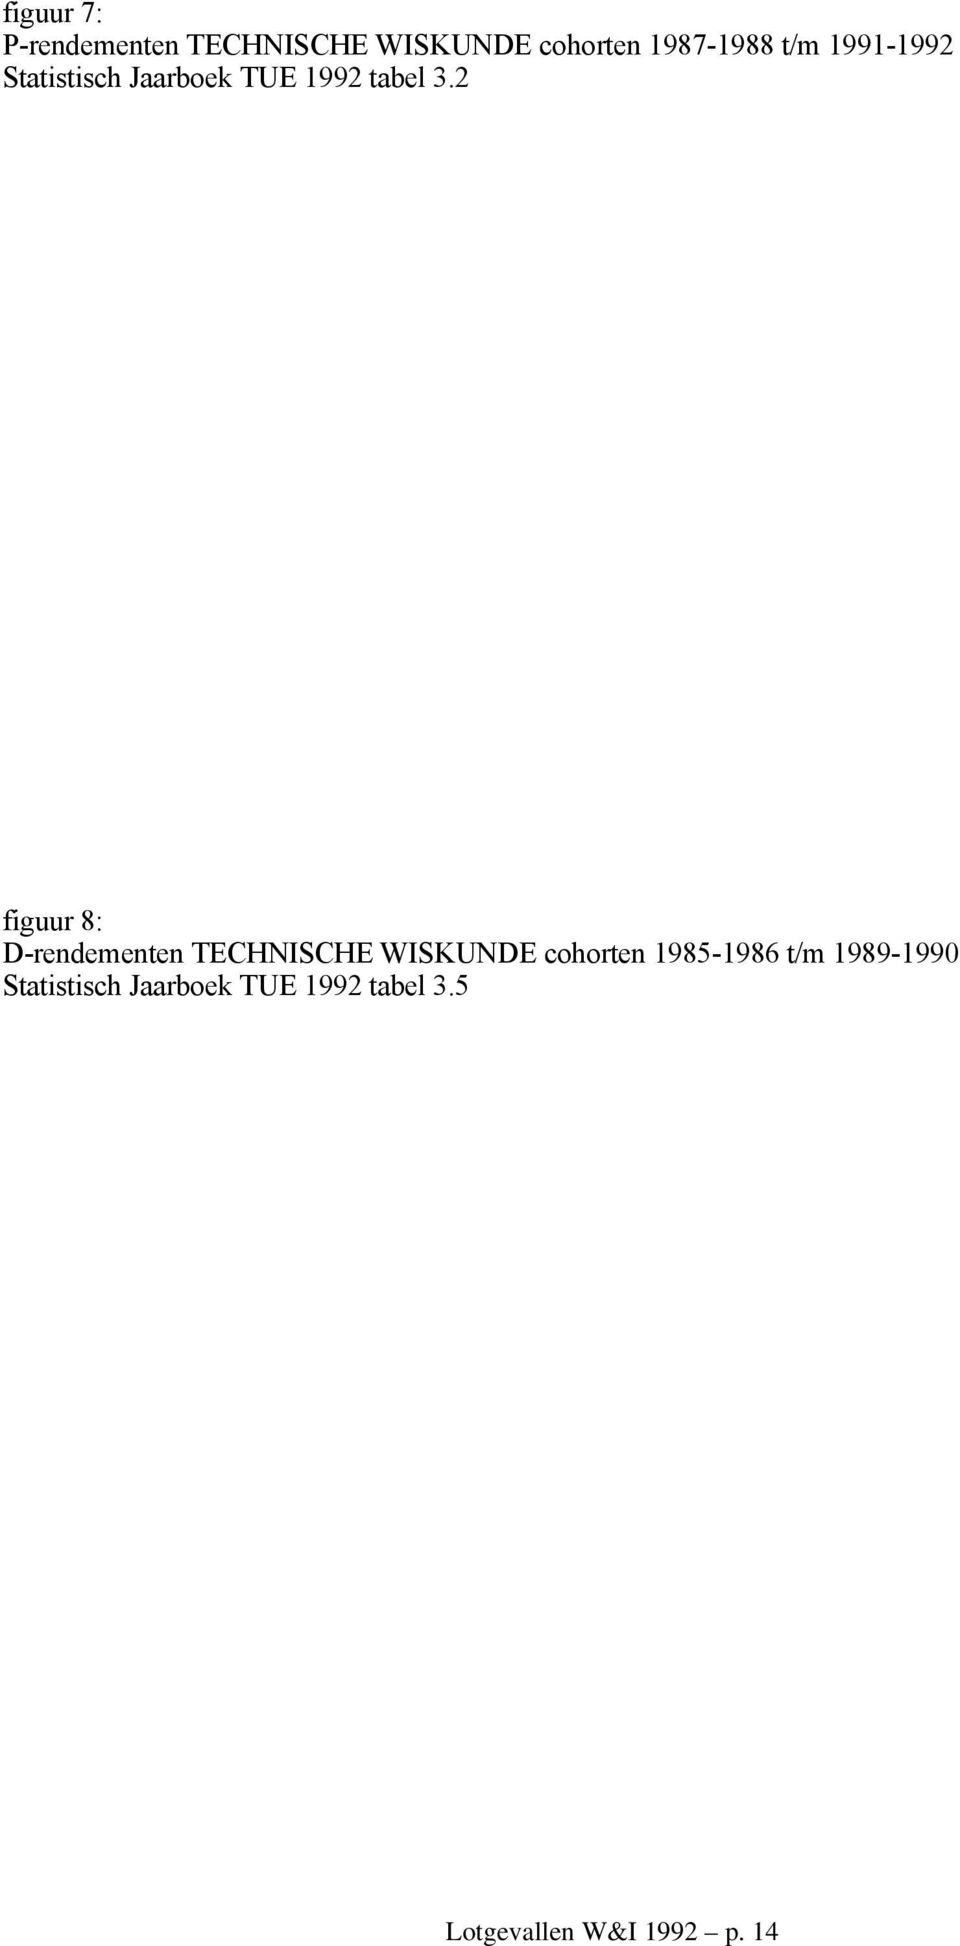 2 figuur 8: D-rendementen TECHNISCHE WISKUNDE cohorten 1985-1986